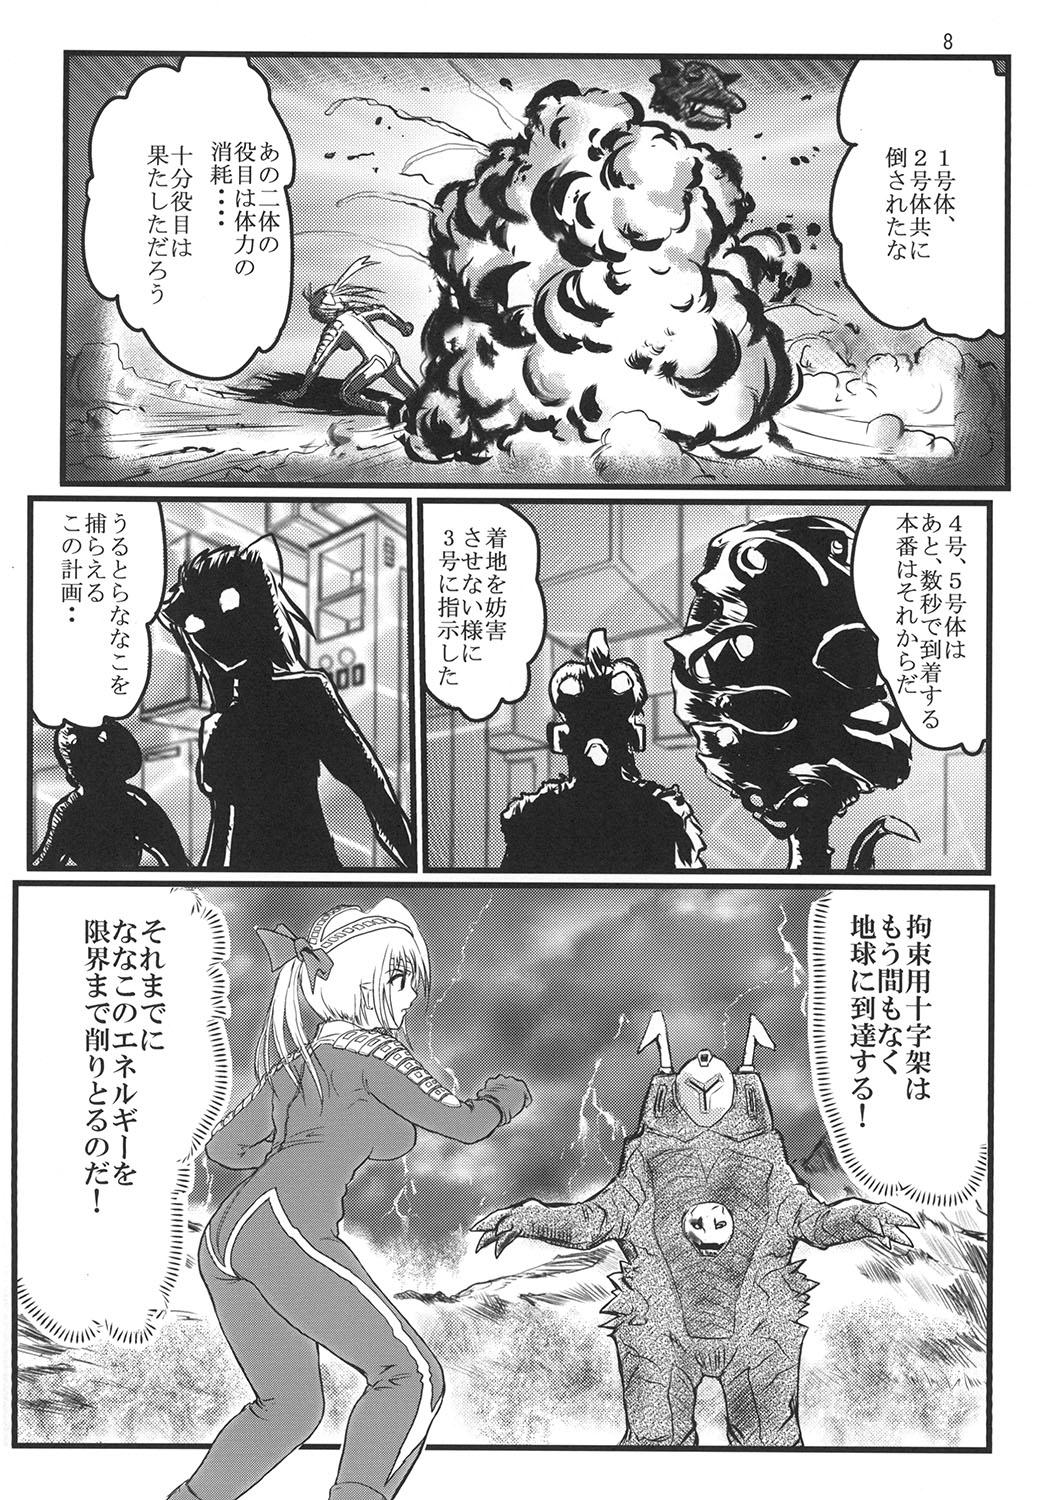 Blowjob Ultra Nanako Zettaizetsumei! - Ultraman Gay - Page 8